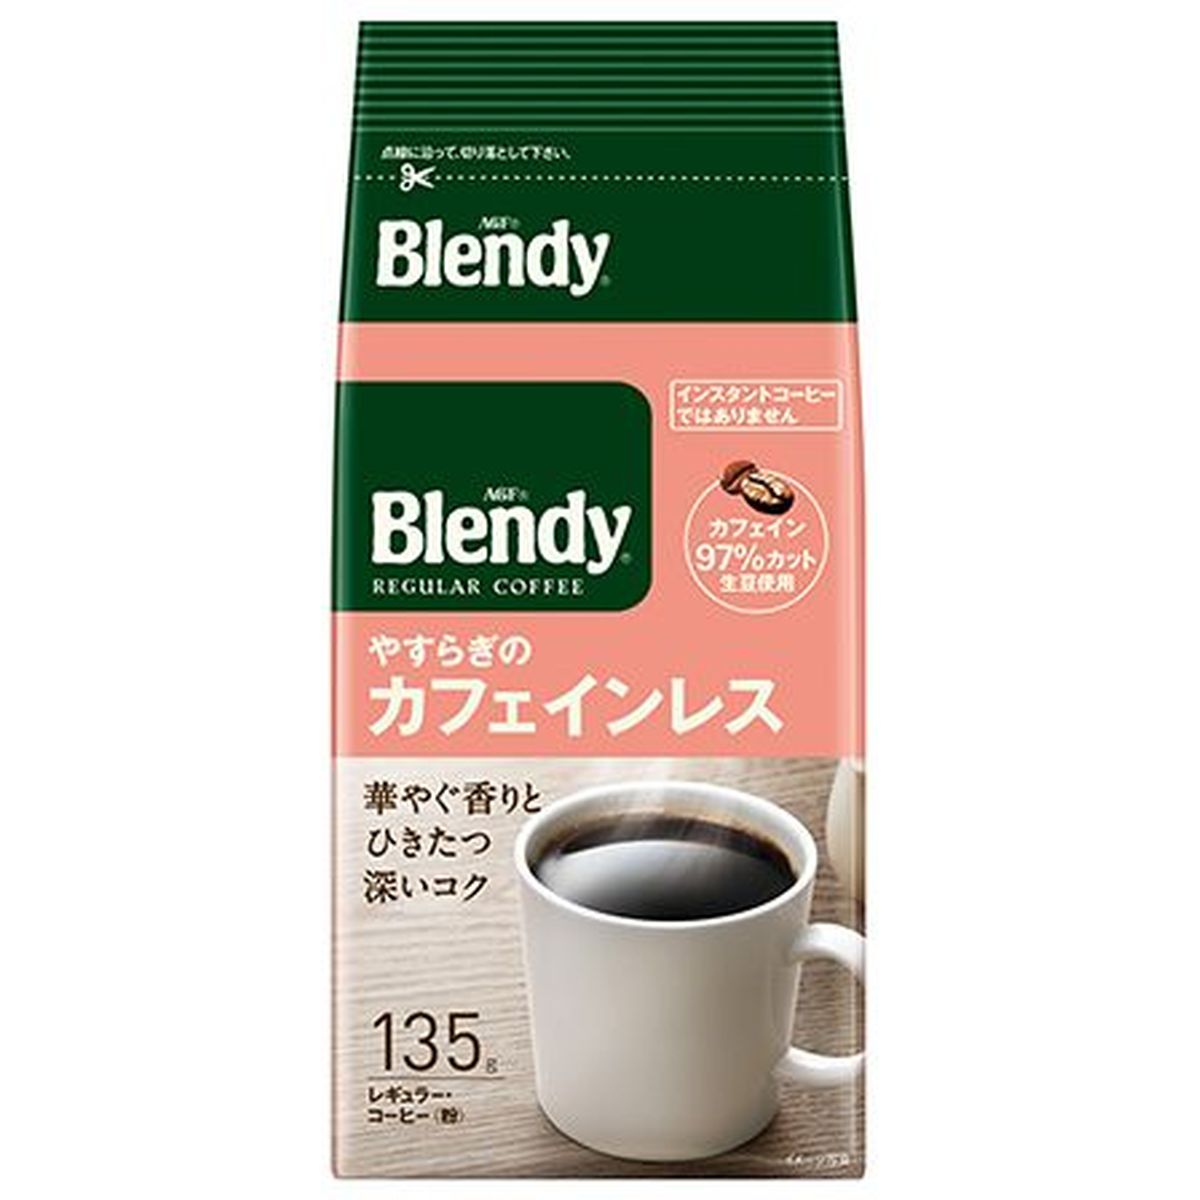 【12個入リ】AGF ブレンディ レギュラーコーヒー ヤスラギカフェインレス 粉 135g